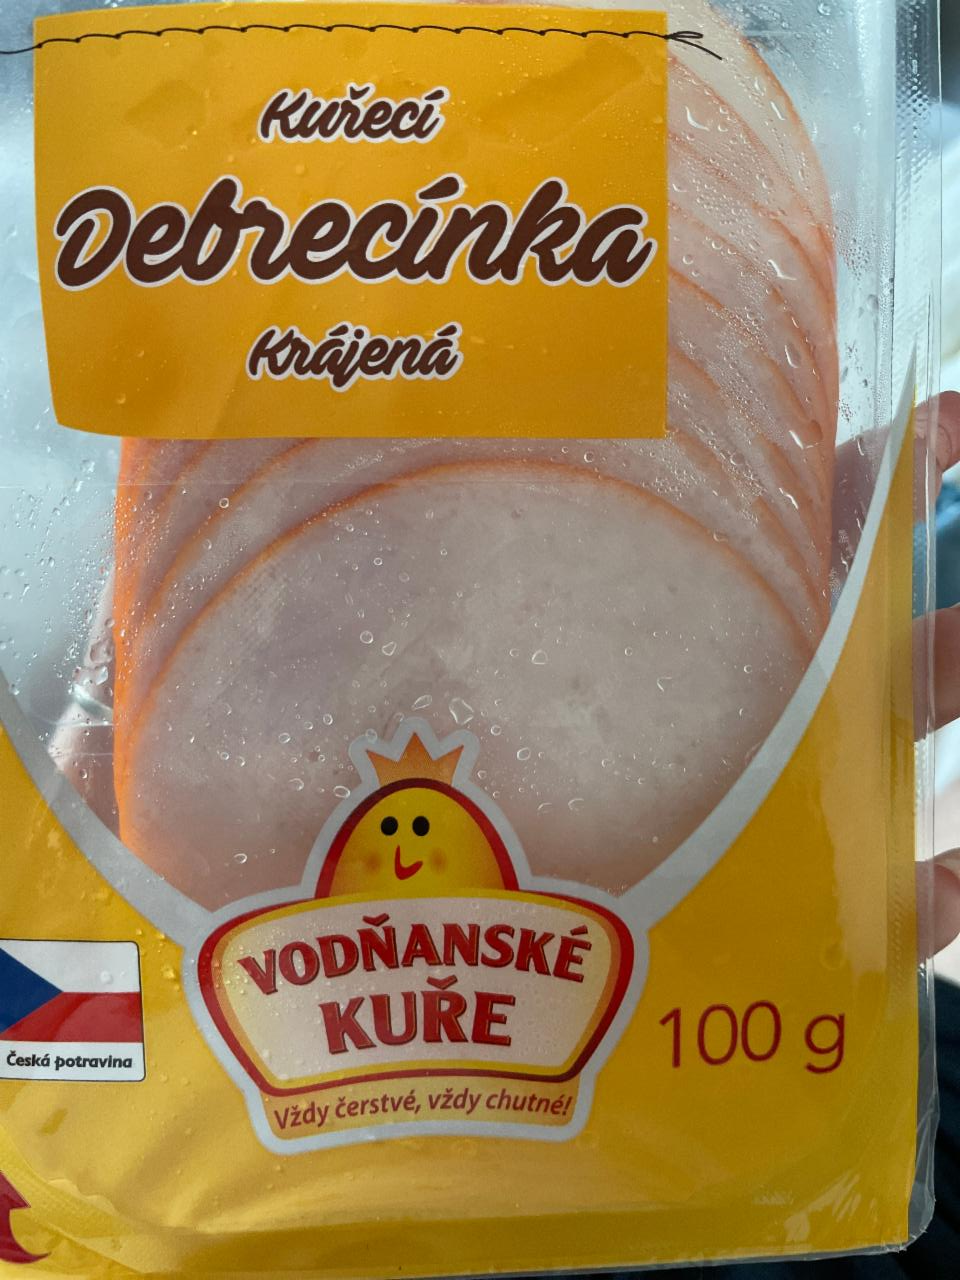 Fotografie - Kuřecí debrecínka Vodňanské kuře